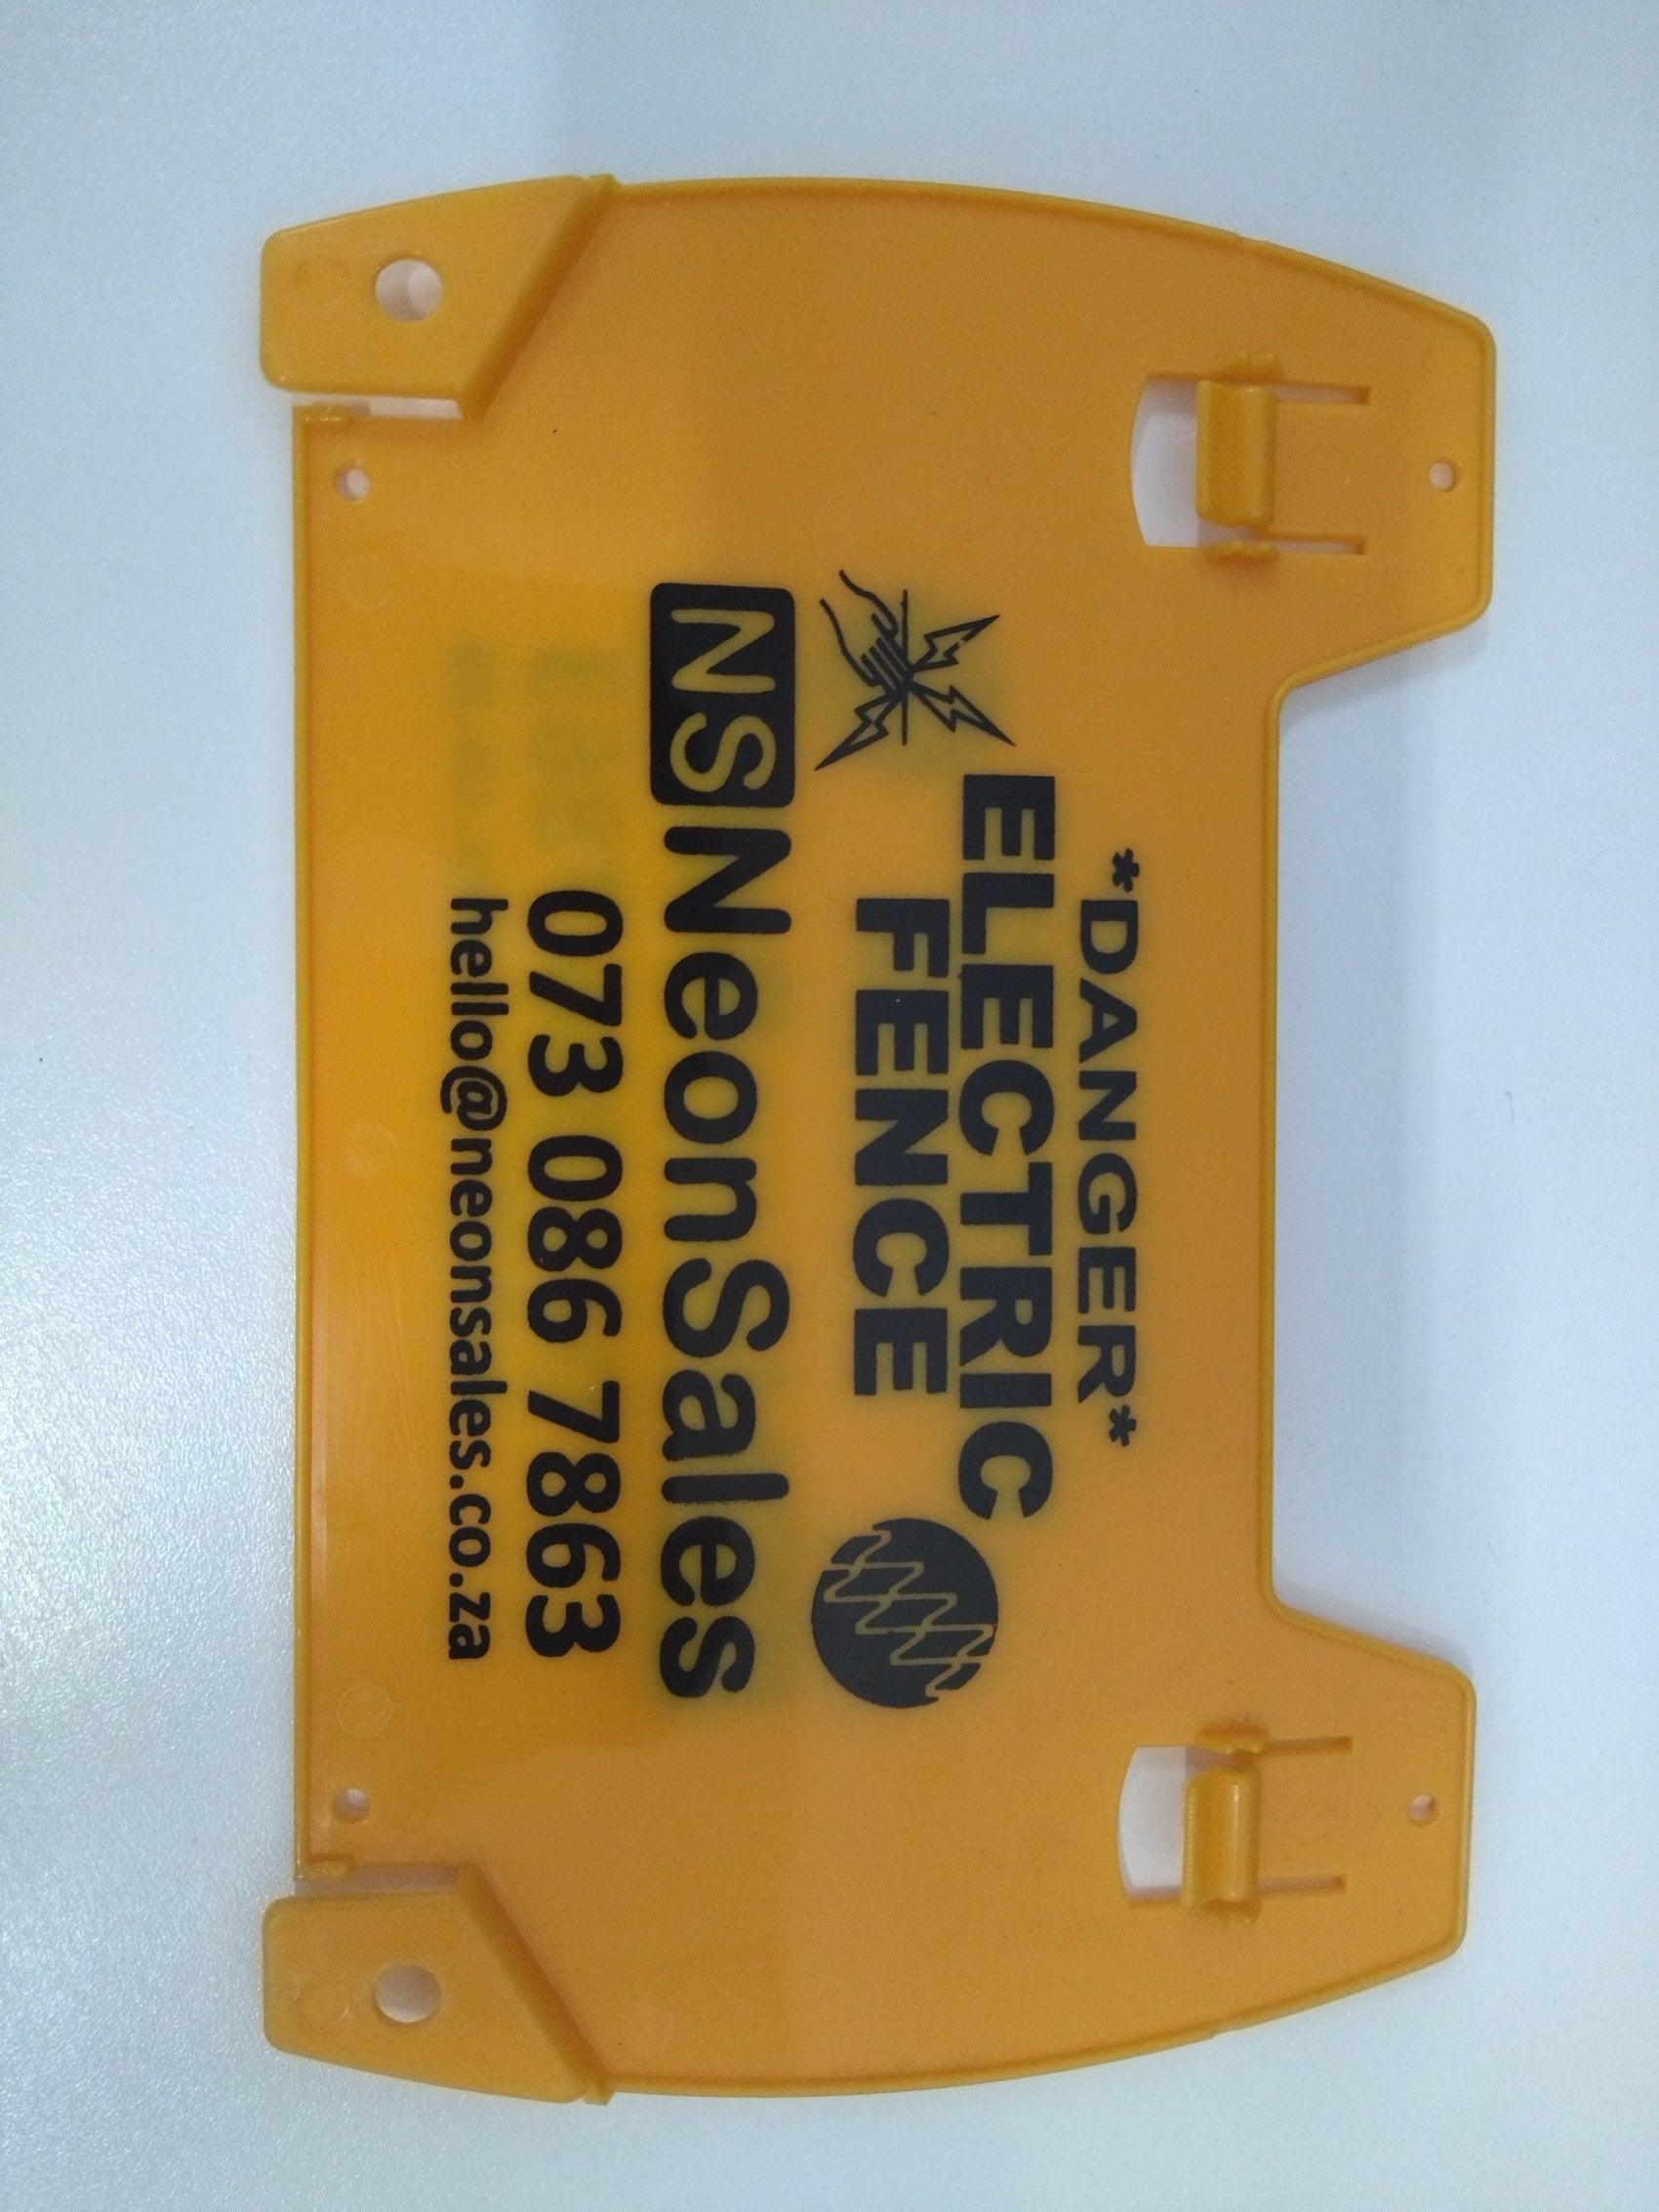 NEMTEK ELECTRIC FENCE WARNING SIGN LARGE - NeonSales South Africa